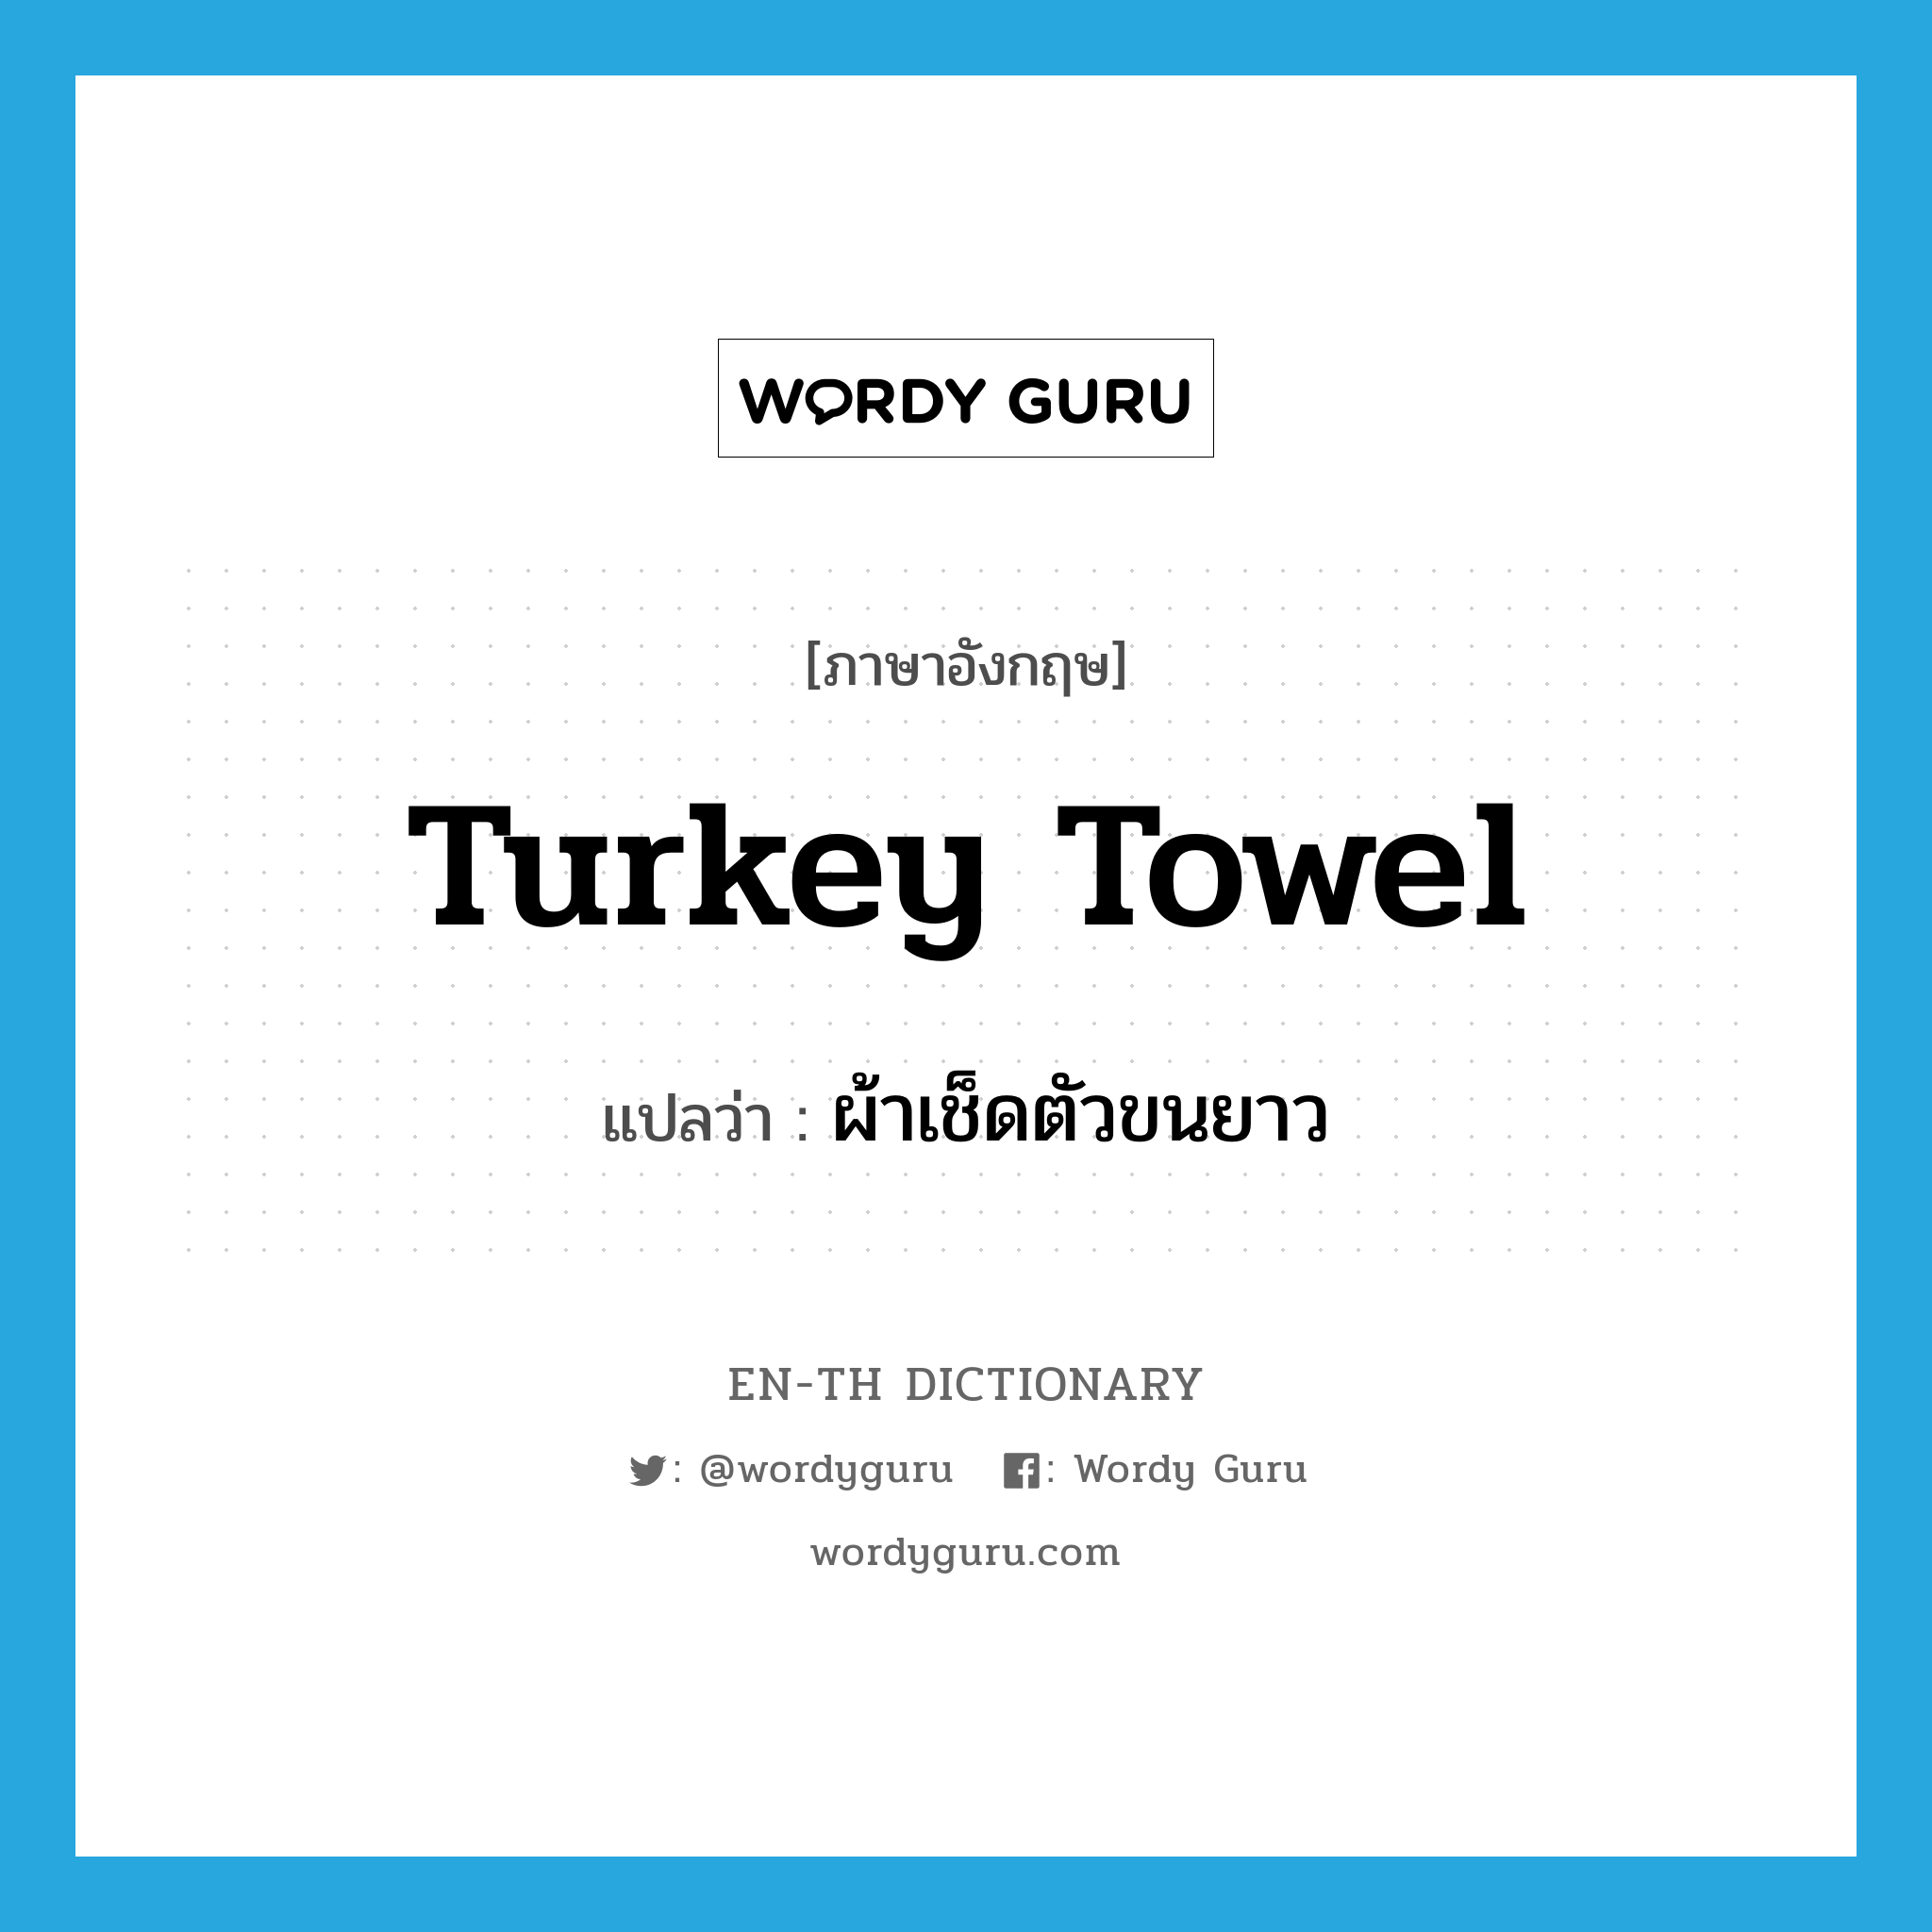 Turkey towel แปลว่า?, คำศัพท์ภาษาอังกฤษ Turkey towel แปลว่า ผ้าเช็ดตัวขนยาว ประเภท N หมวด N